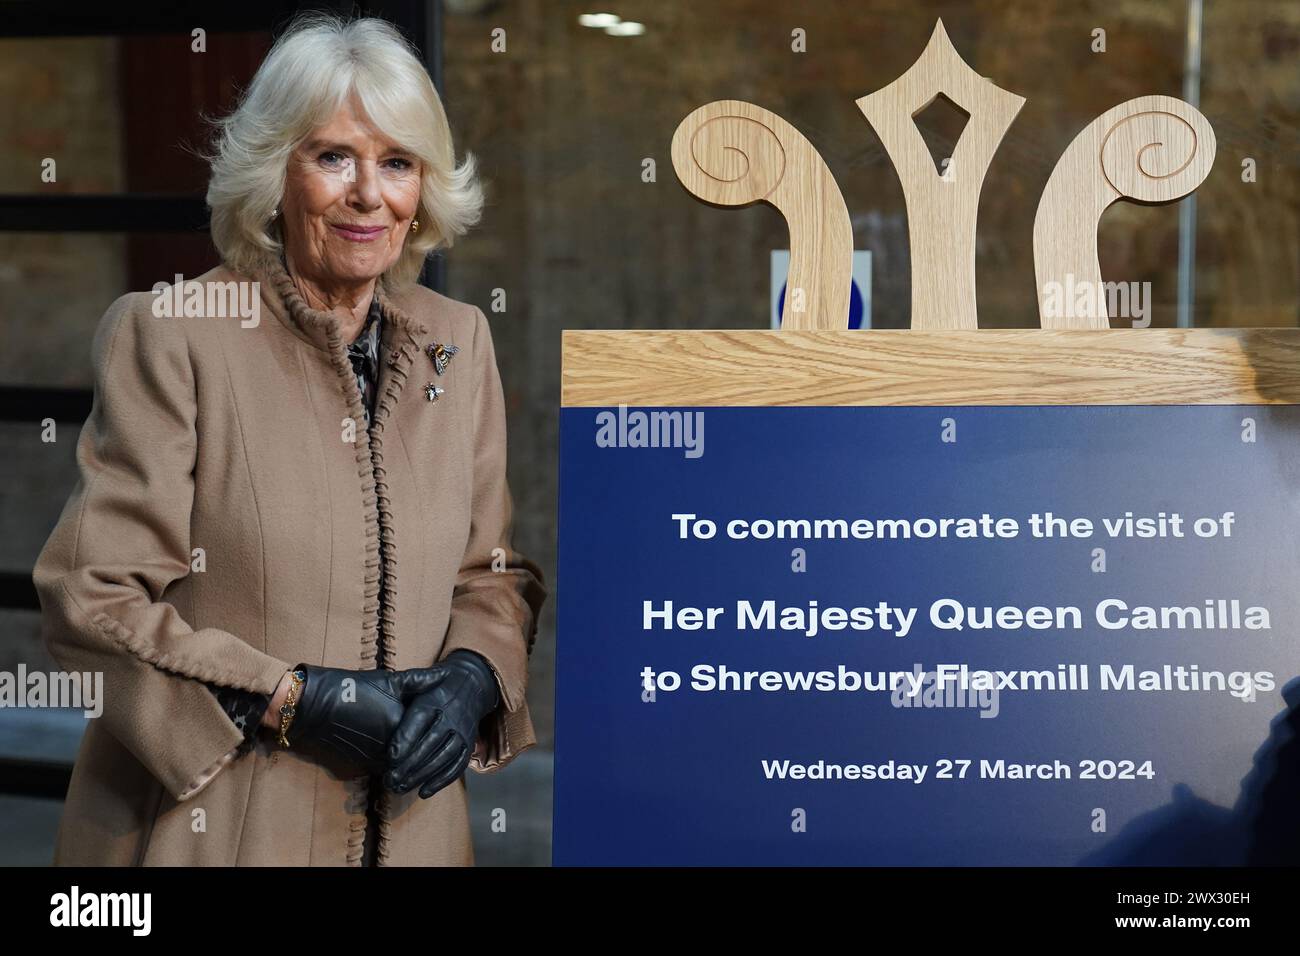 Königin Camilla enthüllt eine Gedenktafel bei einem Besuch der kürzlich restaurierten Shrewsbury Flaxmill Maltings in Shropshire. Bilddatum: Mittwoch, 27. März 2024. Stockfoto